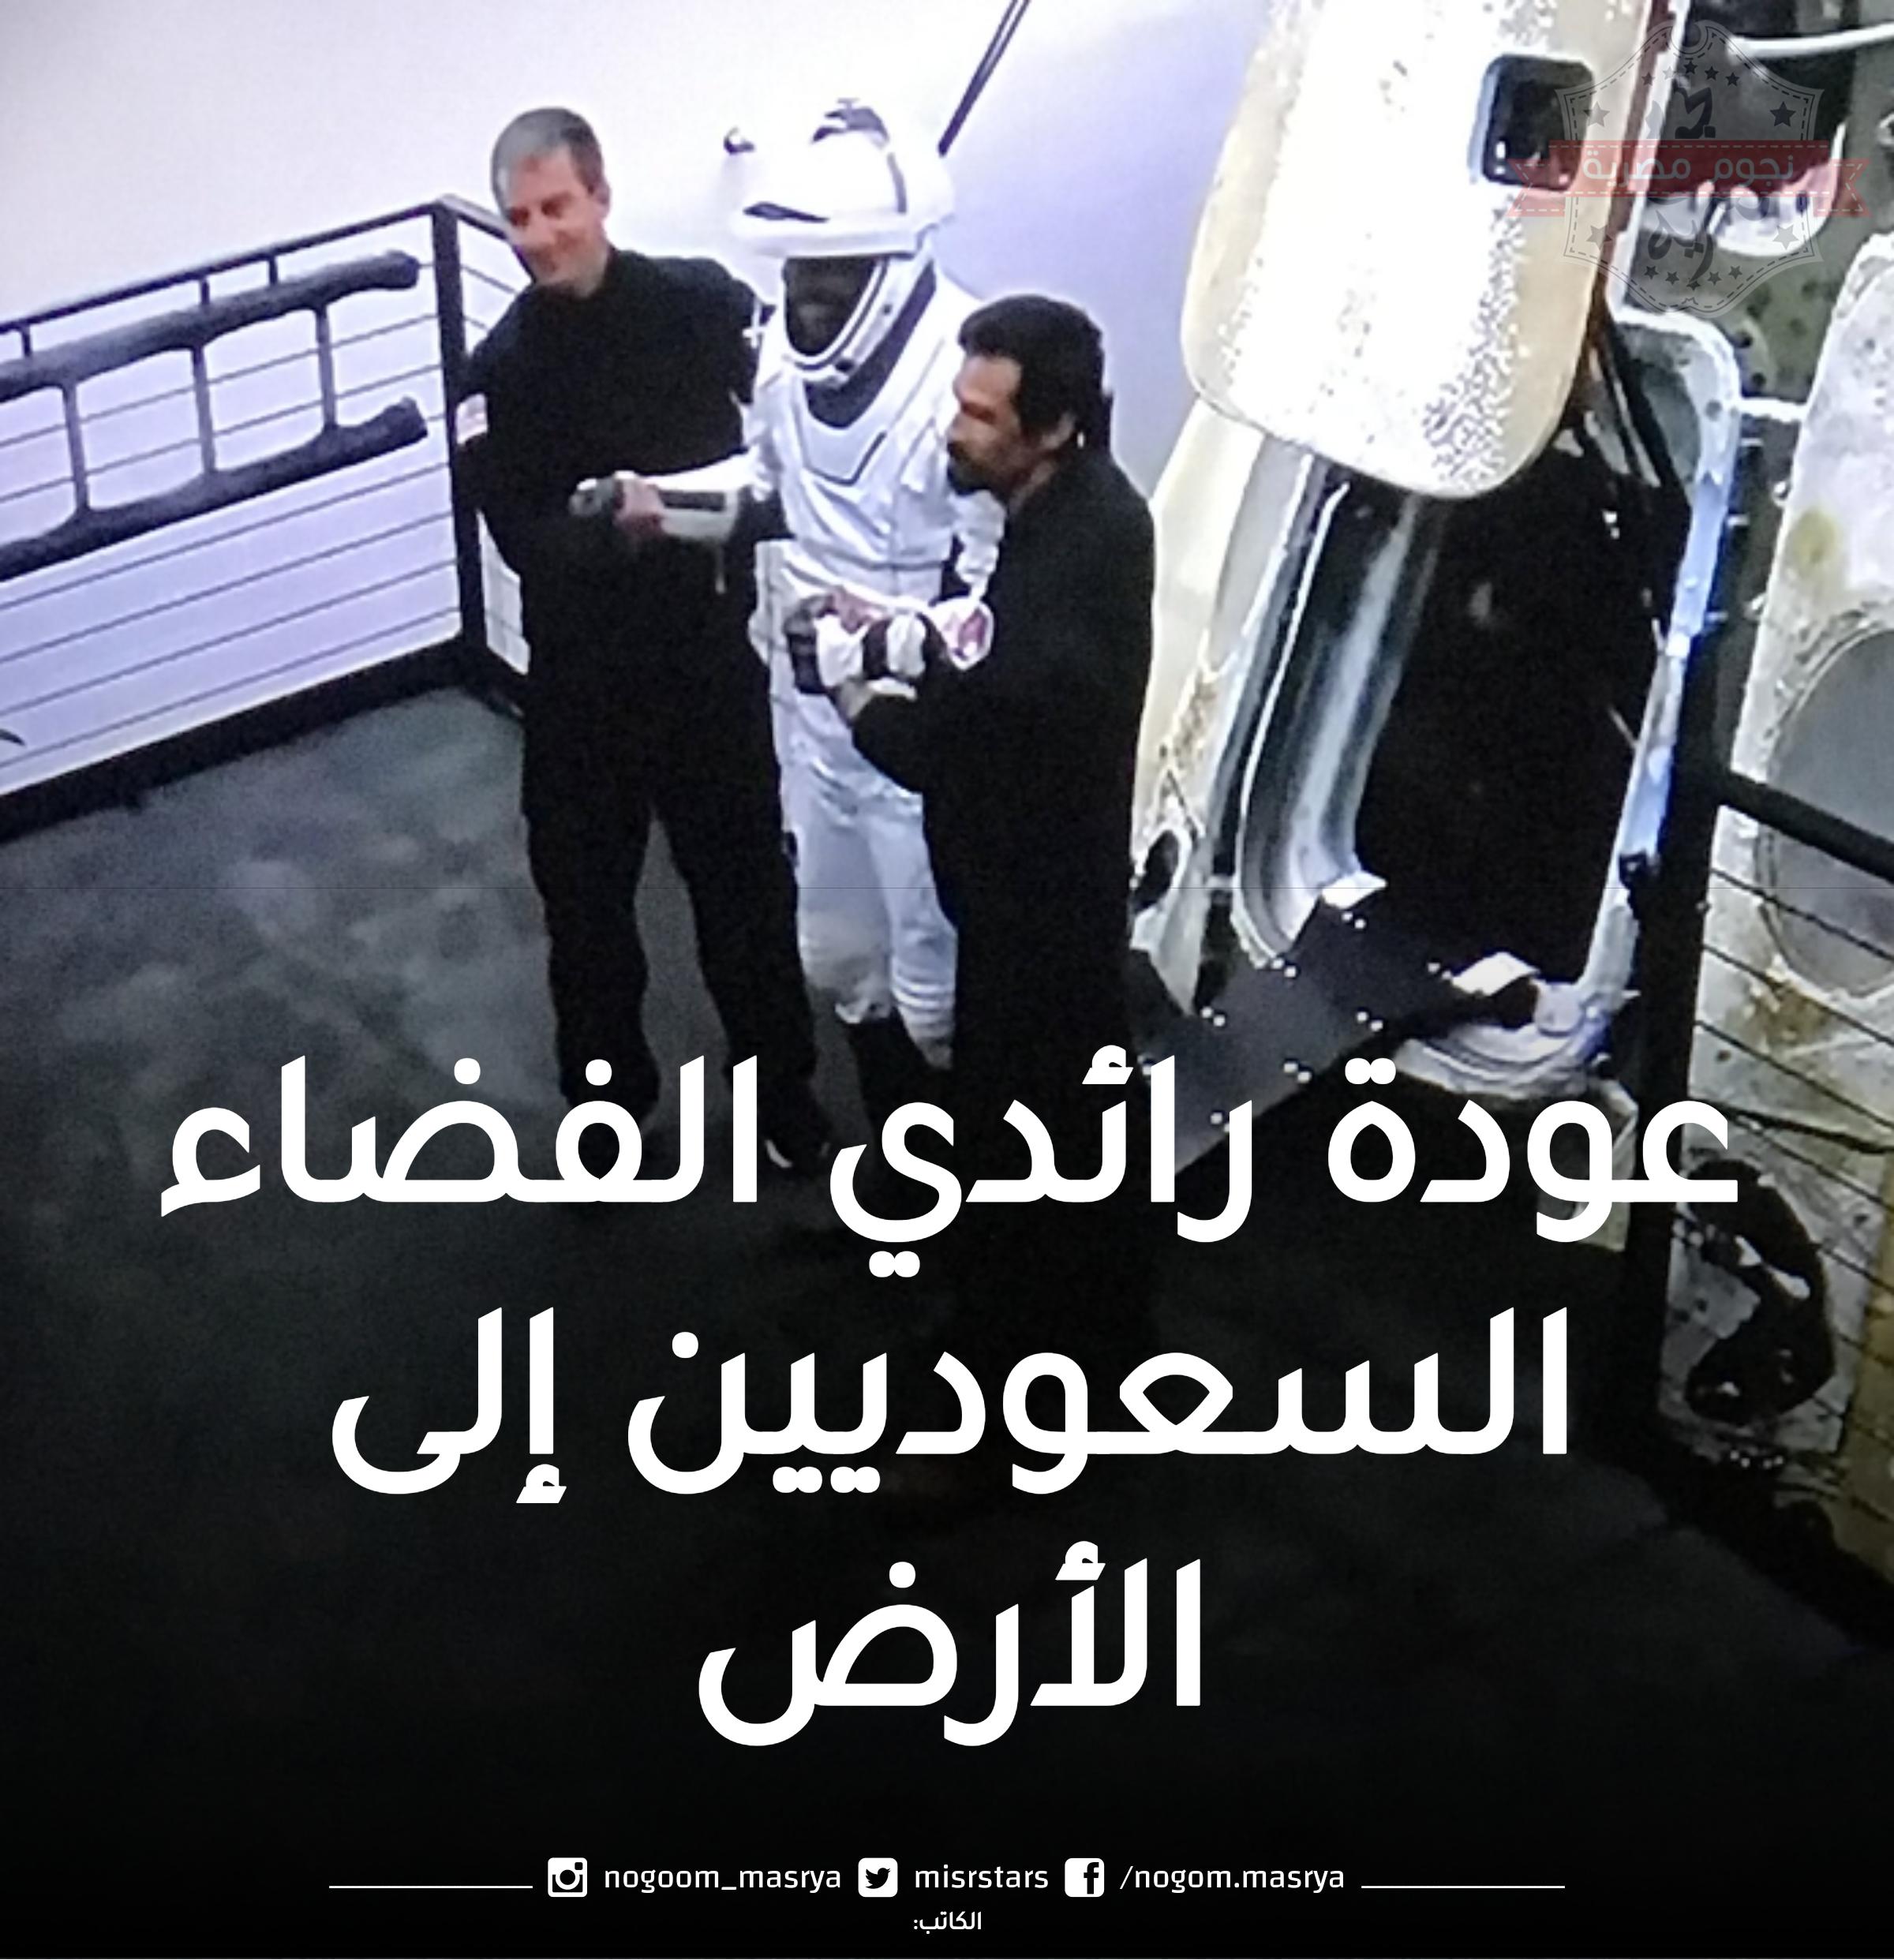 عودة رائدي الفضاء السعوديين إلى الأرض بعد إنتهاء رحلتهم